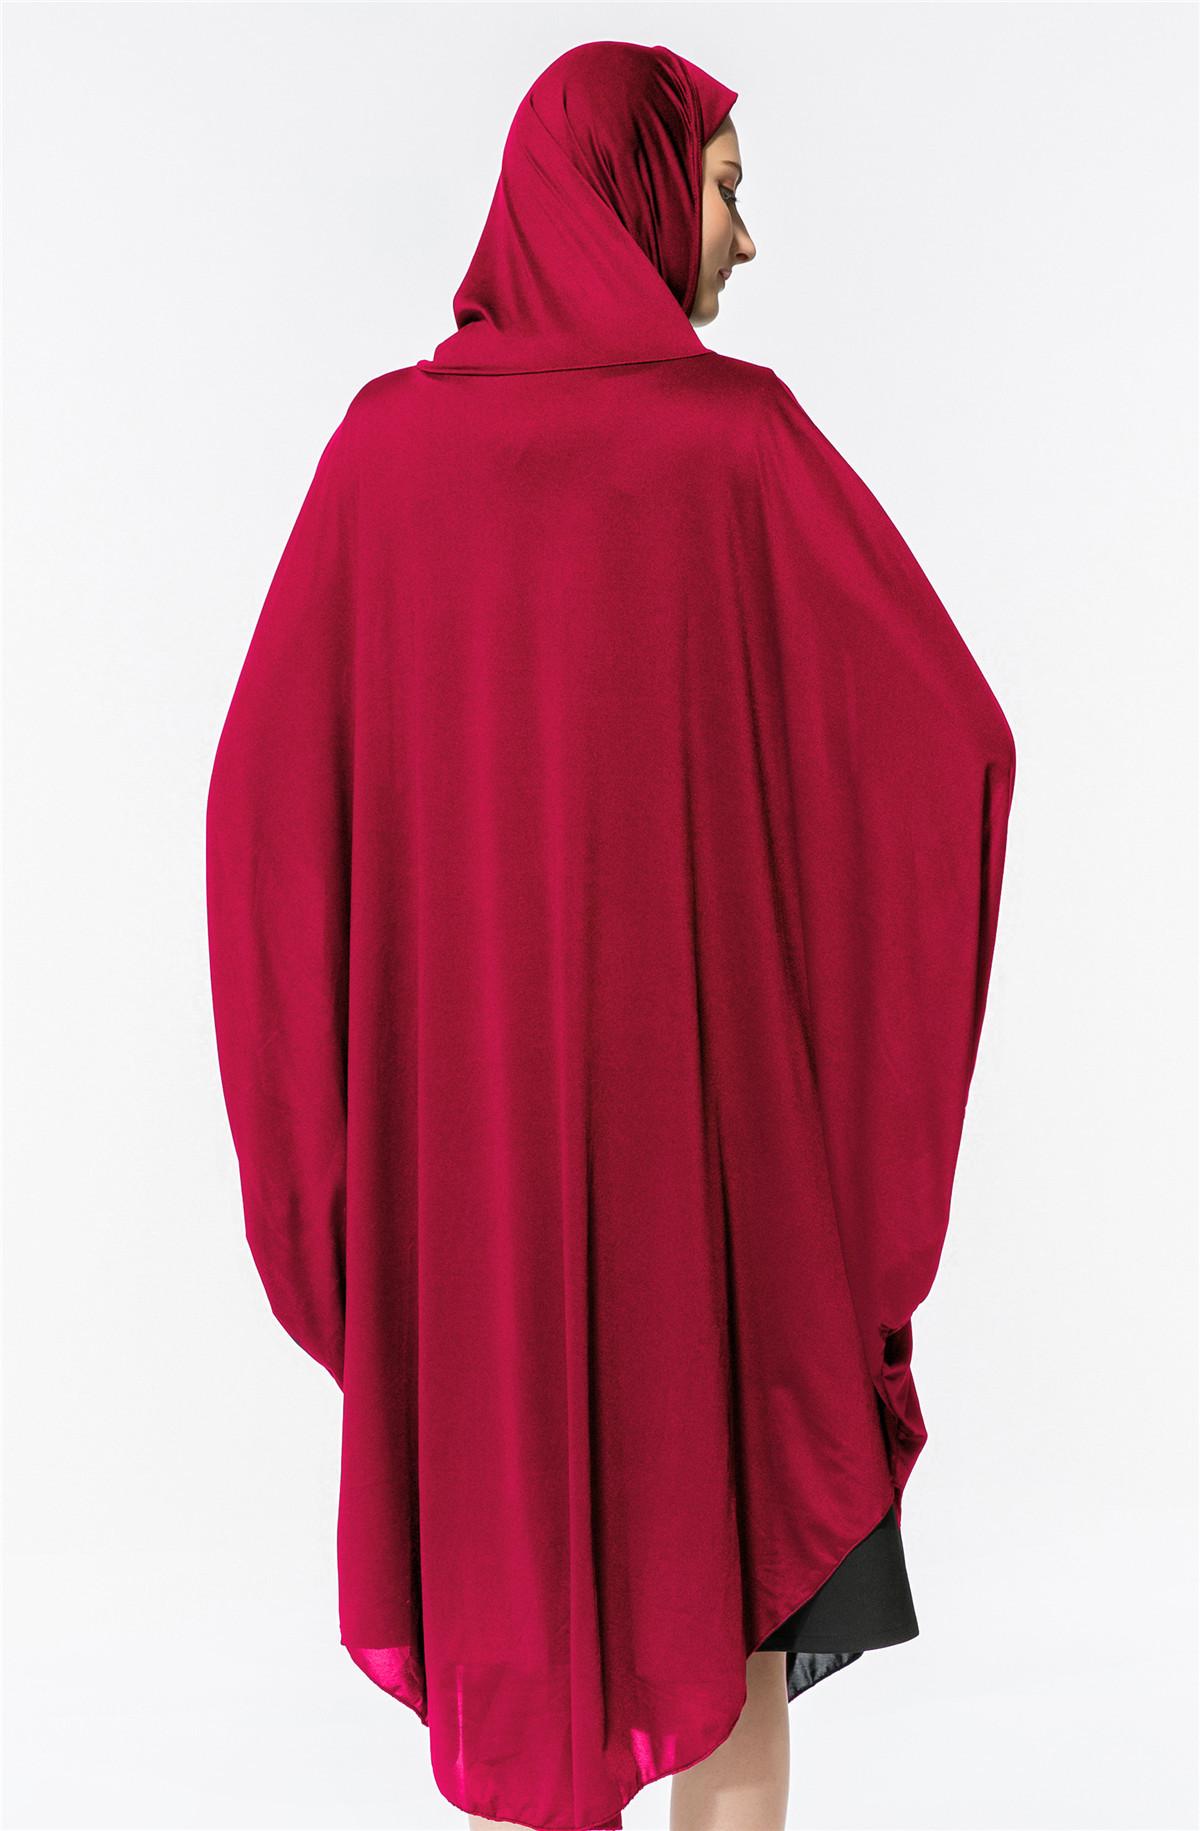 Изображение товара: Арабское мусульманское женское платье для молитвы, рукав летучая мышь, с капюшоном, платье для молитвы, мусульманский халат, мусульманский халат, абайя, молитва, хиджаб, платье